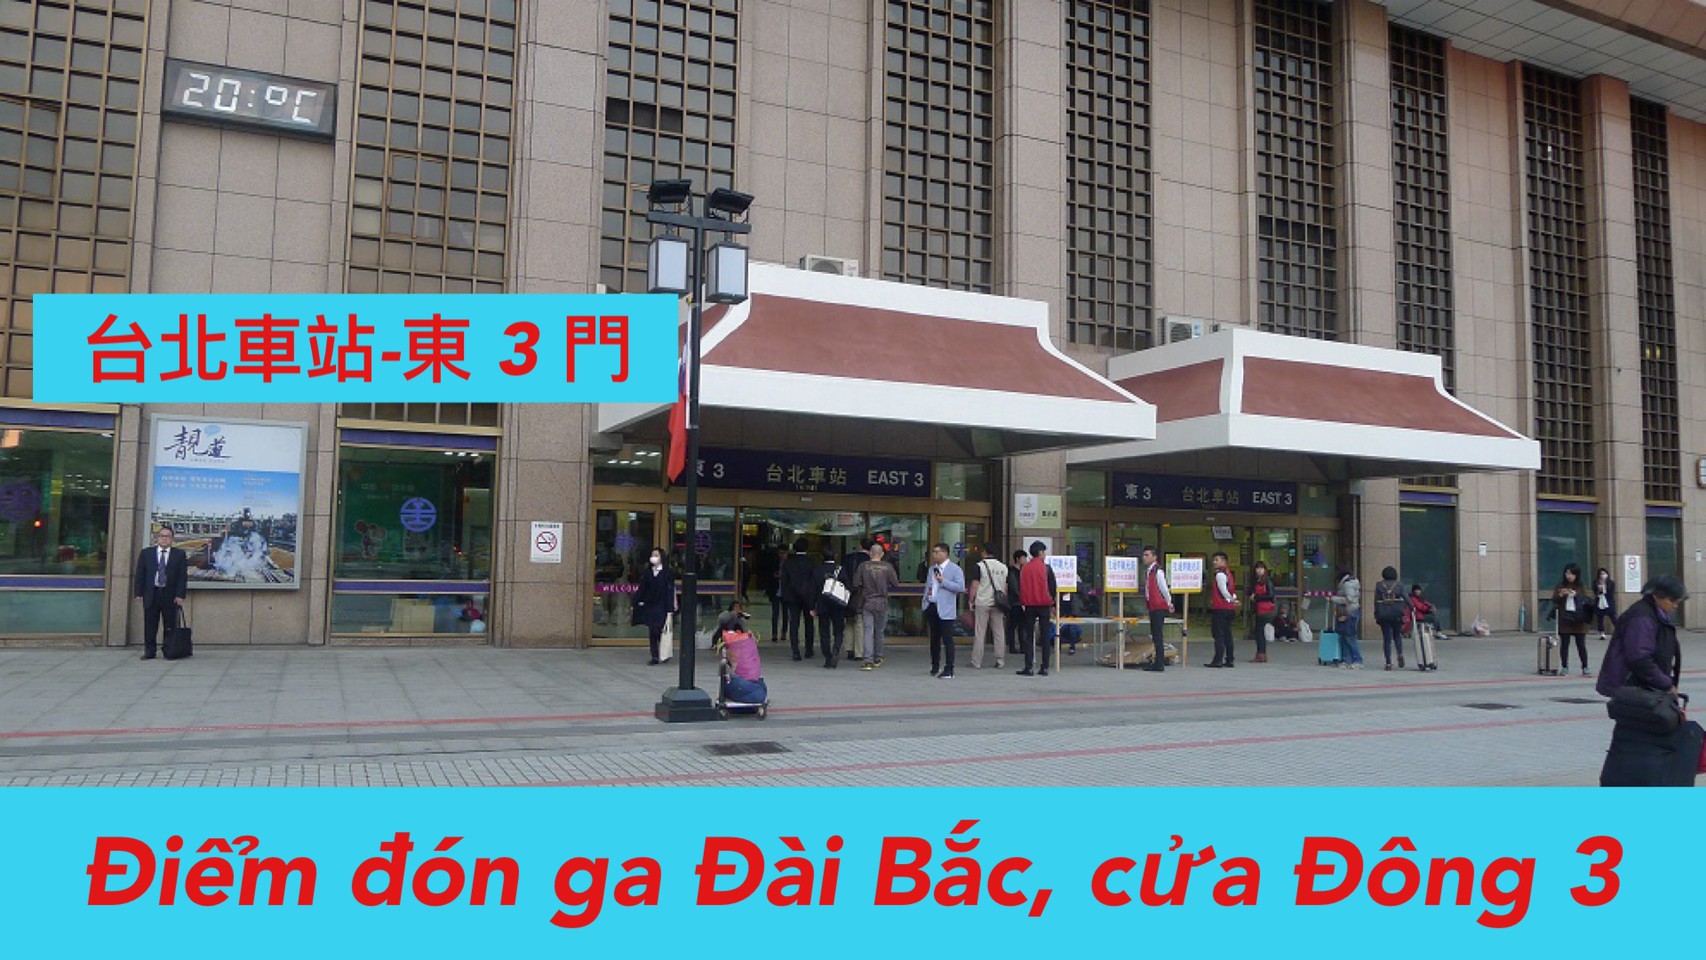 06:00  Đón ga Đài Bắc-East 3  台北車站(東三門)